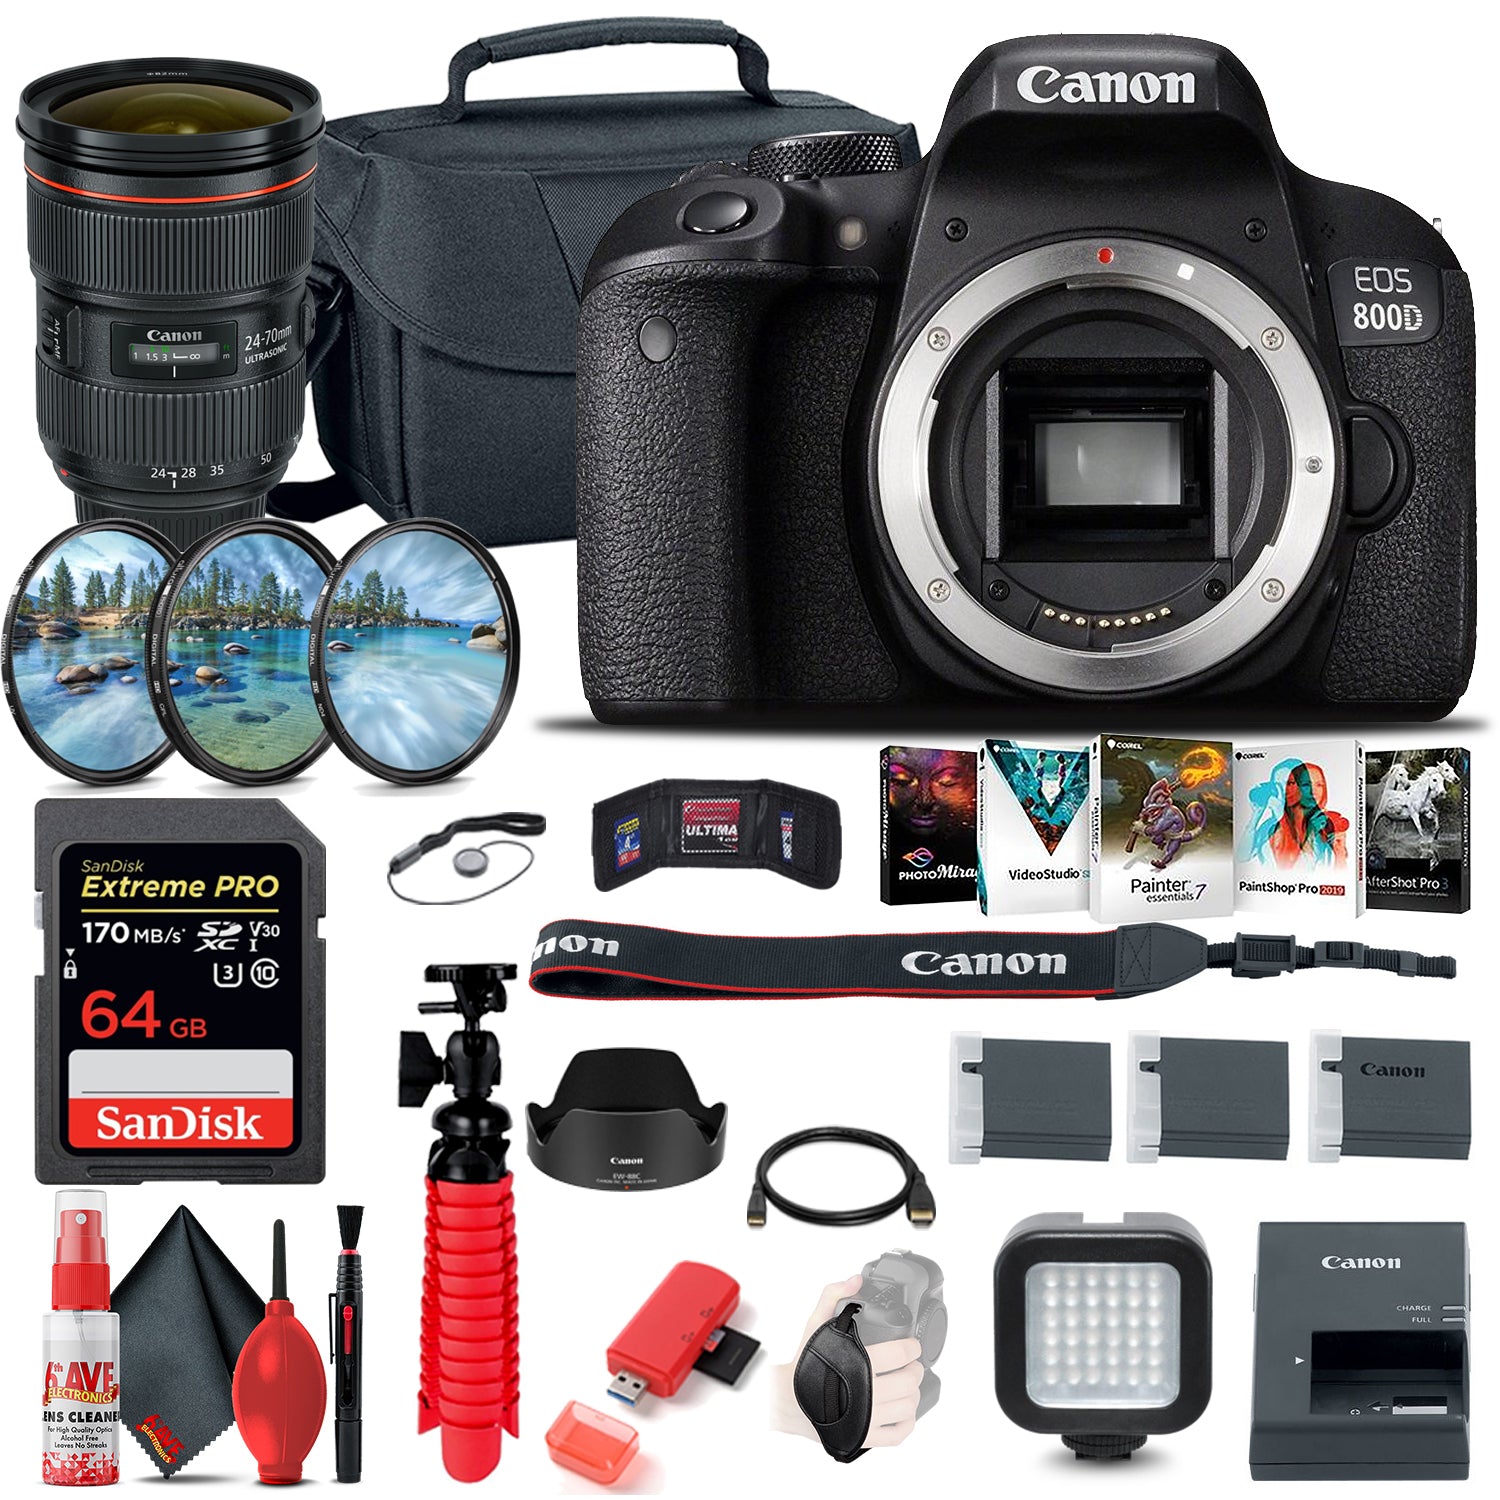 Canon EOS Rebel 800D / T7i DSLR Camera (Body Only) + EF 24-70mm Lens Ultimate Bundle